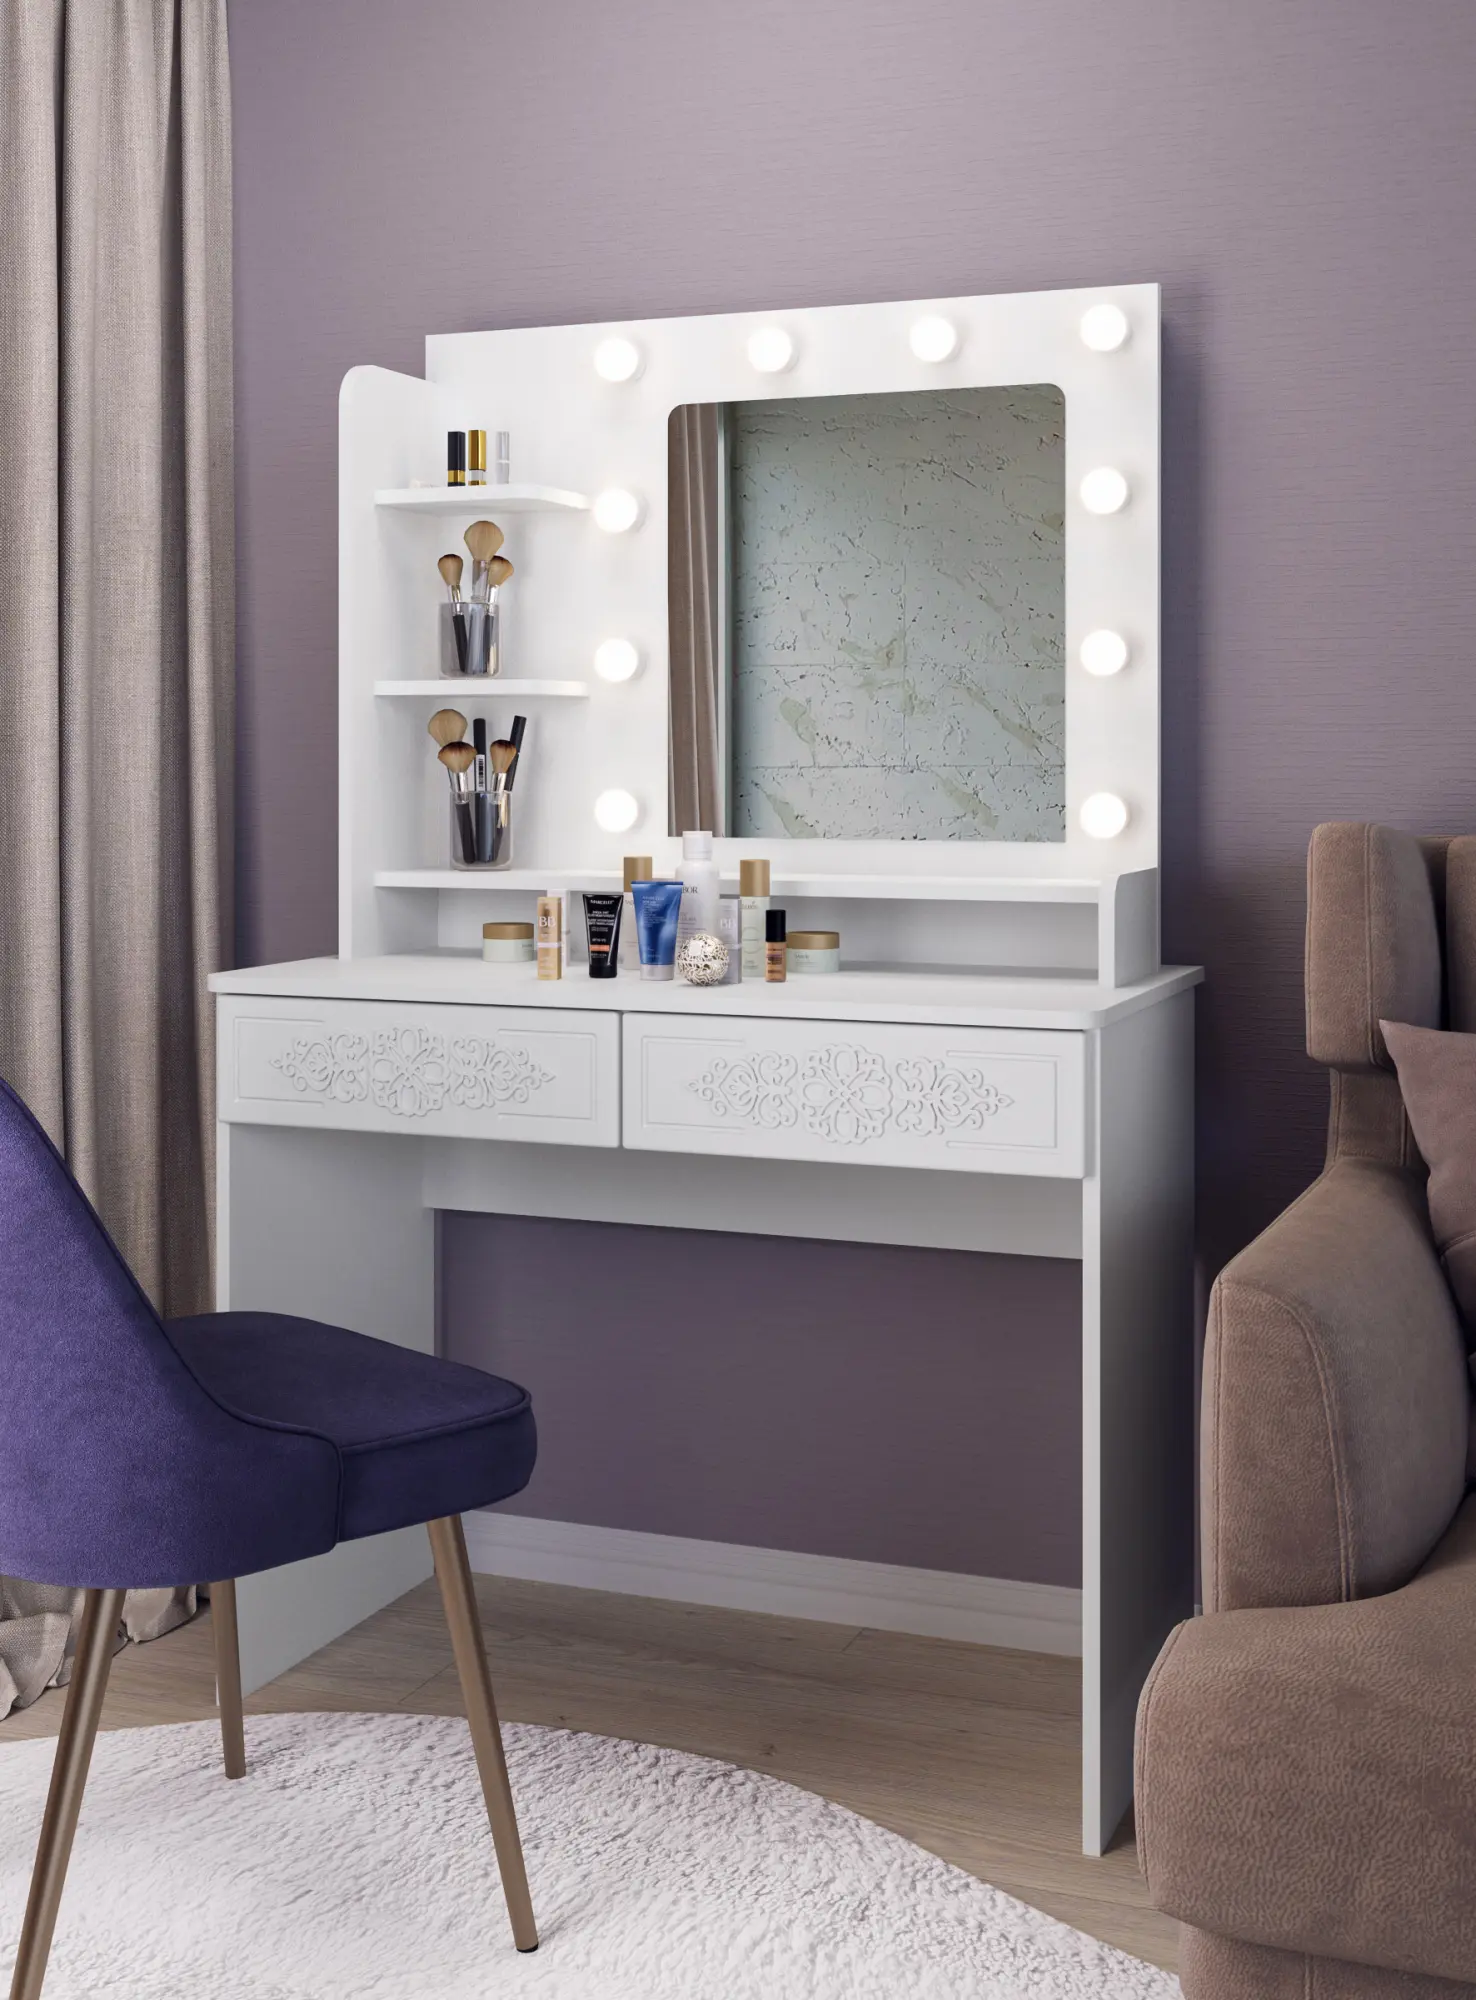 Белый туалетный столик с зеркалом: модель с овальным зеркалом, узкие варианты с поверхностью глянец и позолотой - выбор для современных интерьеров